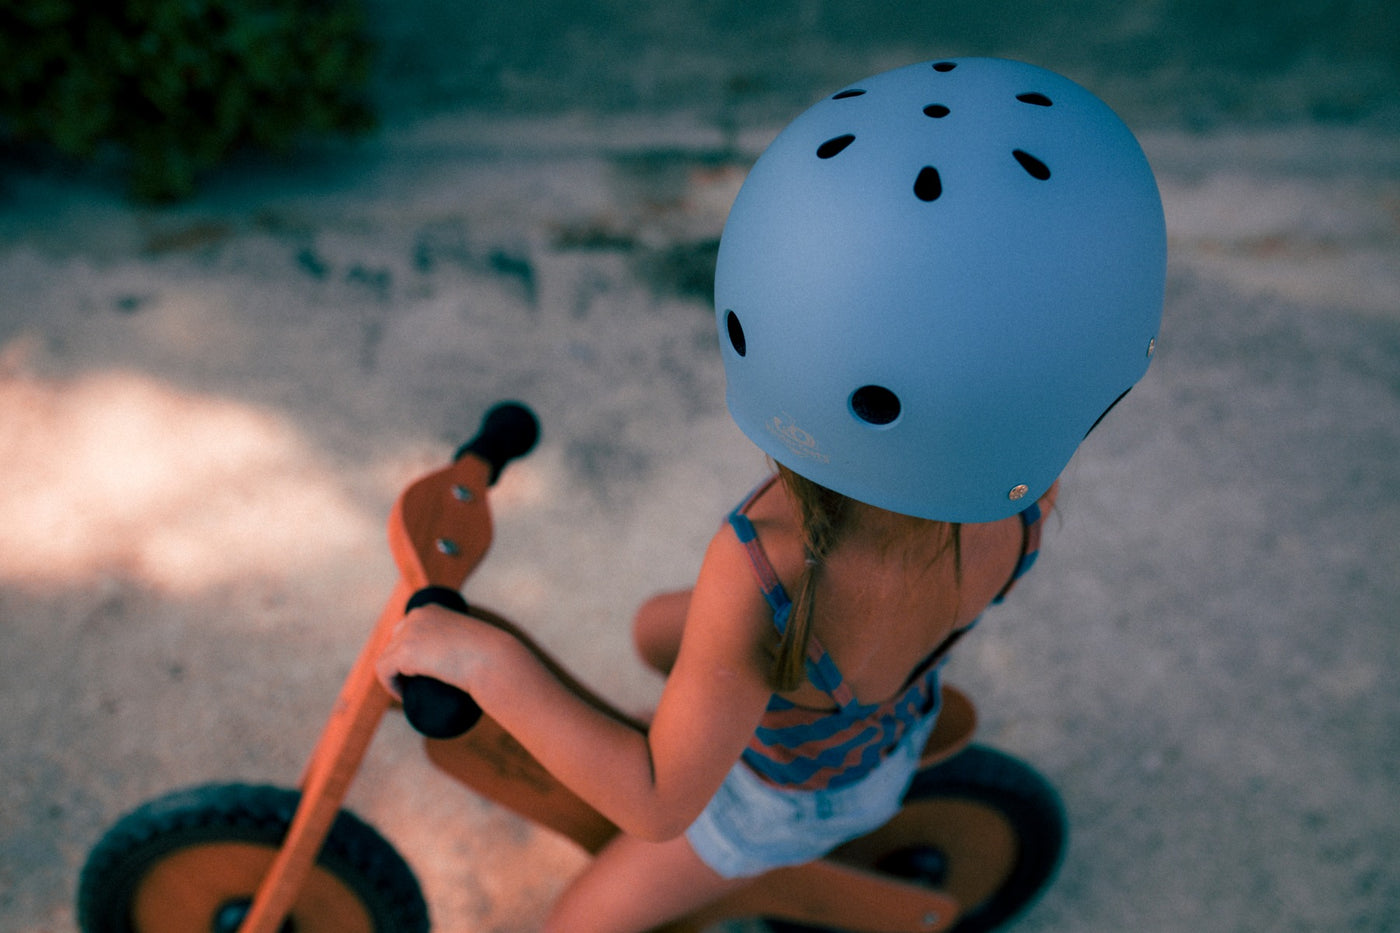 Kinderfeets Helmet Slate Blue